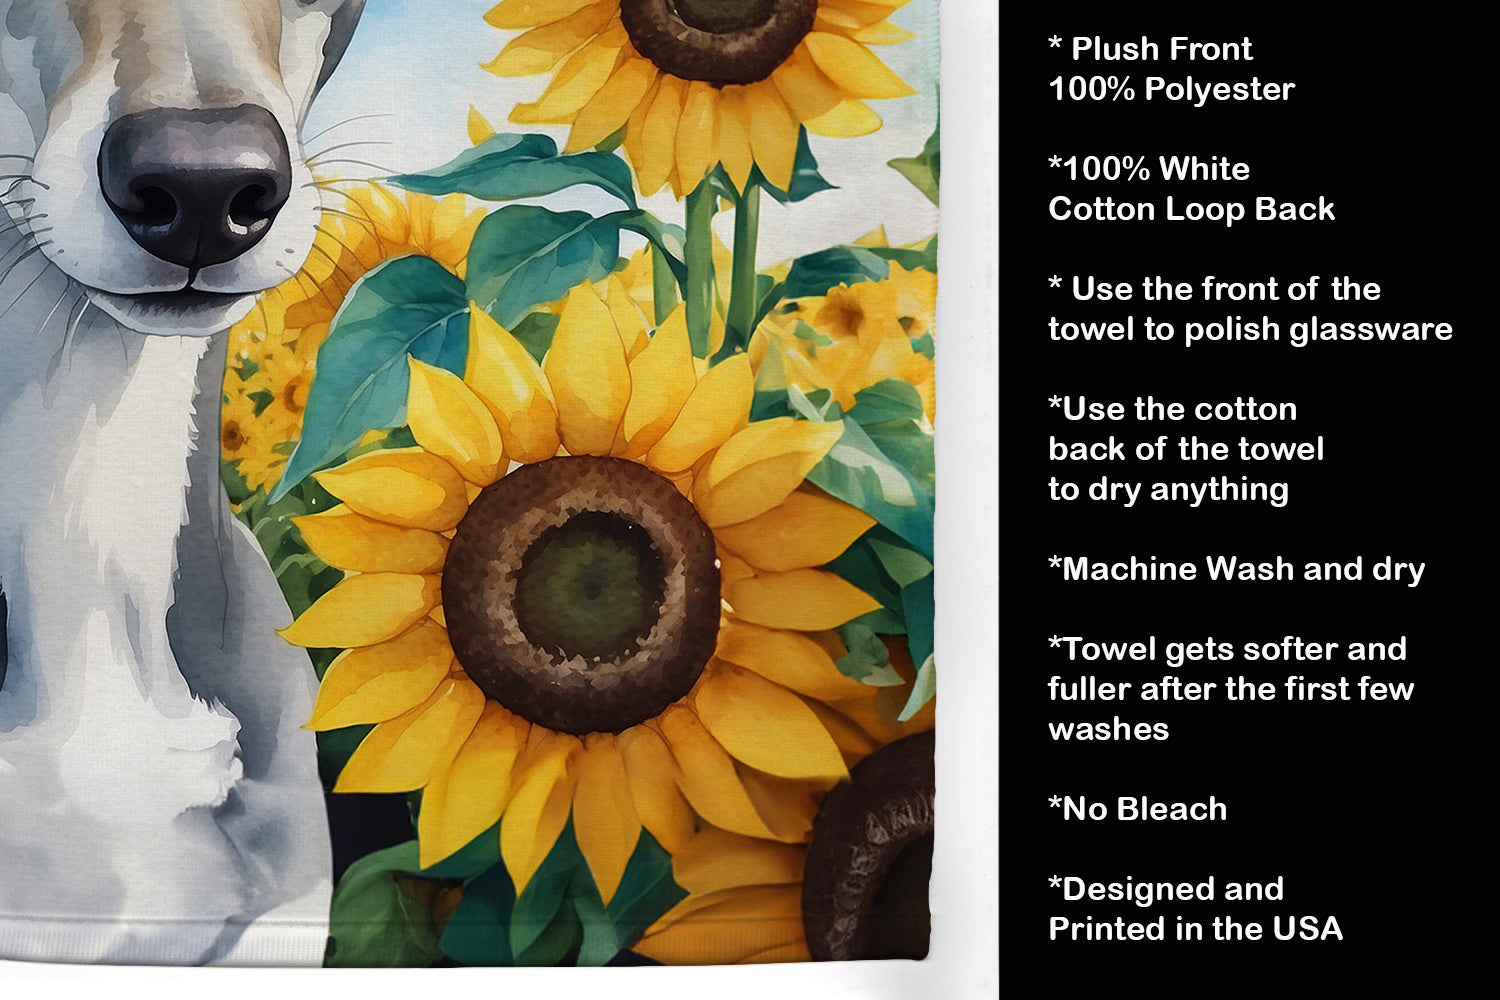 Greyhound in Sunflowers Kitchen Towel